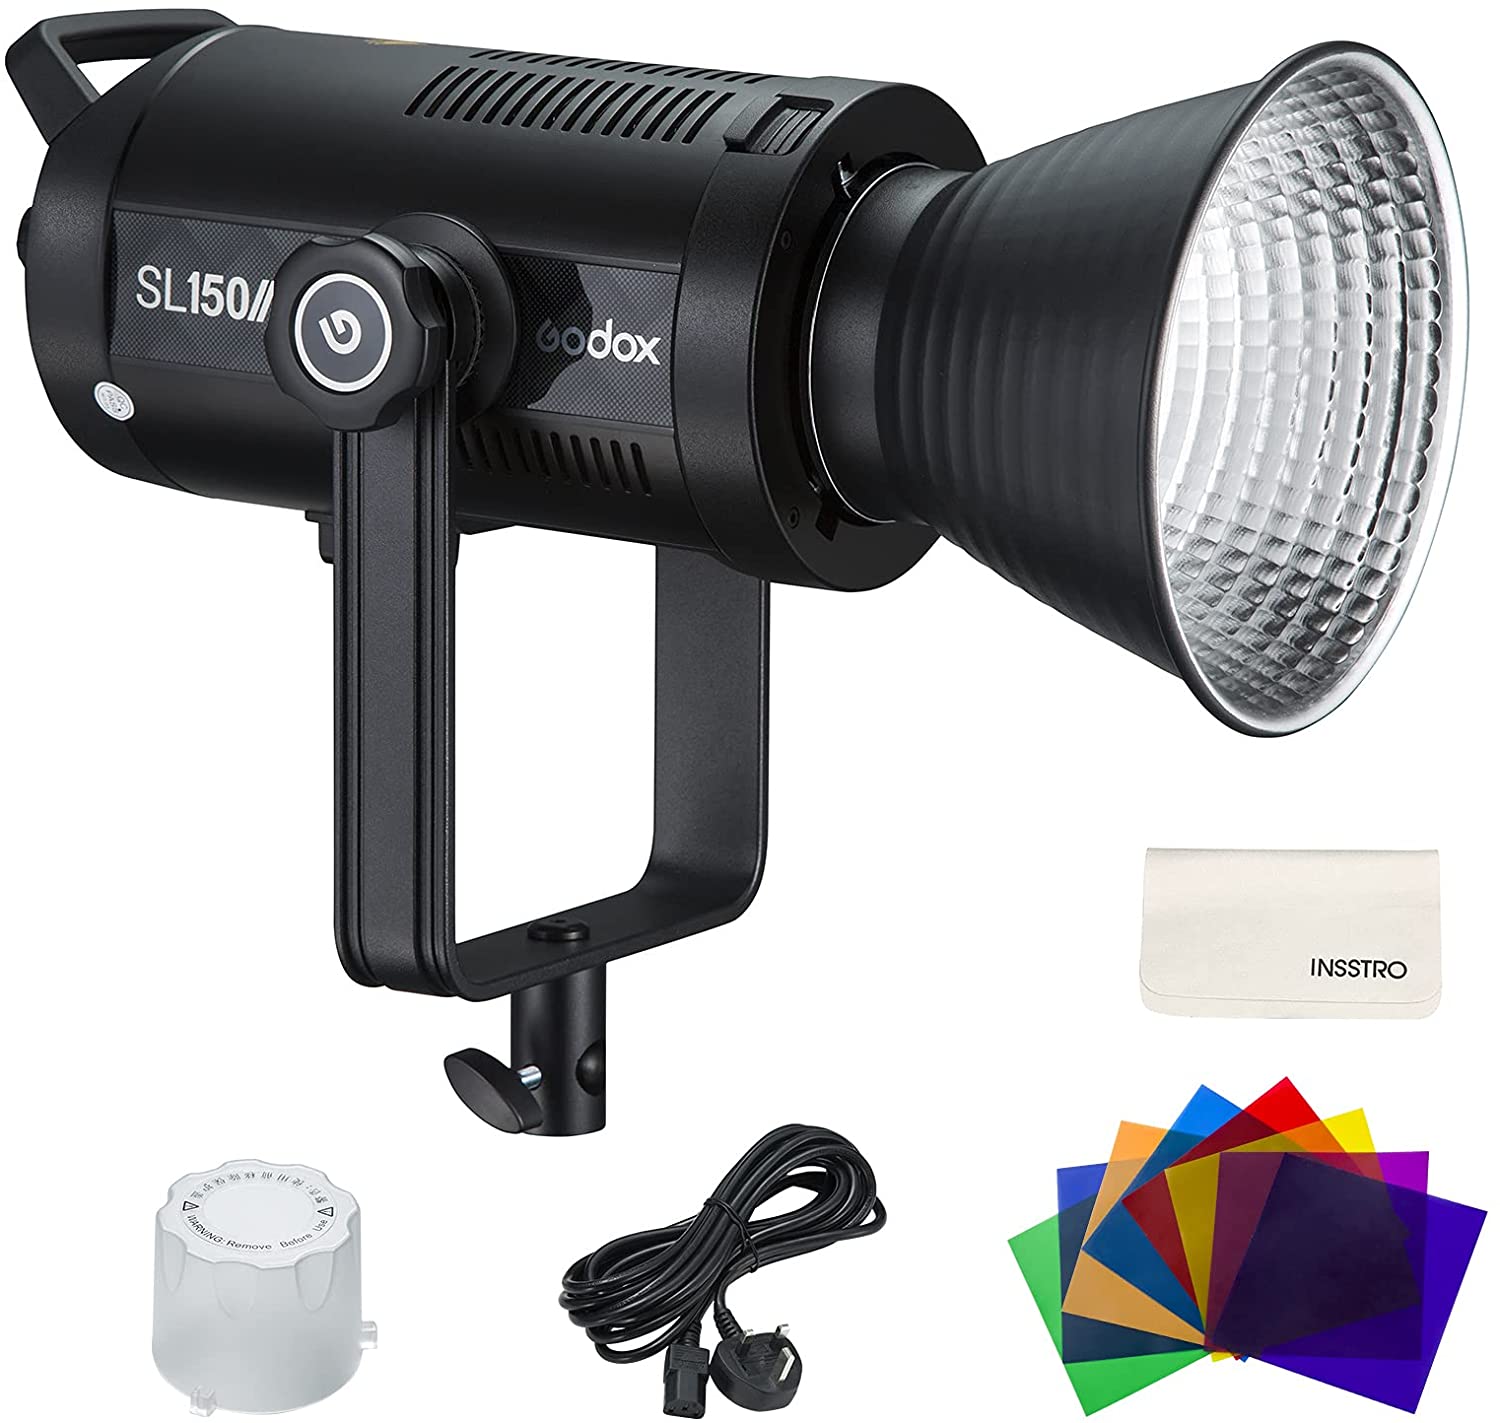 Godox SL150IIBi LED-Videolicht 150W zweifarbig, Sparen Sie 8%, Check out mit Aktionscode bei Amazon UC44QF9P - INSSTRO